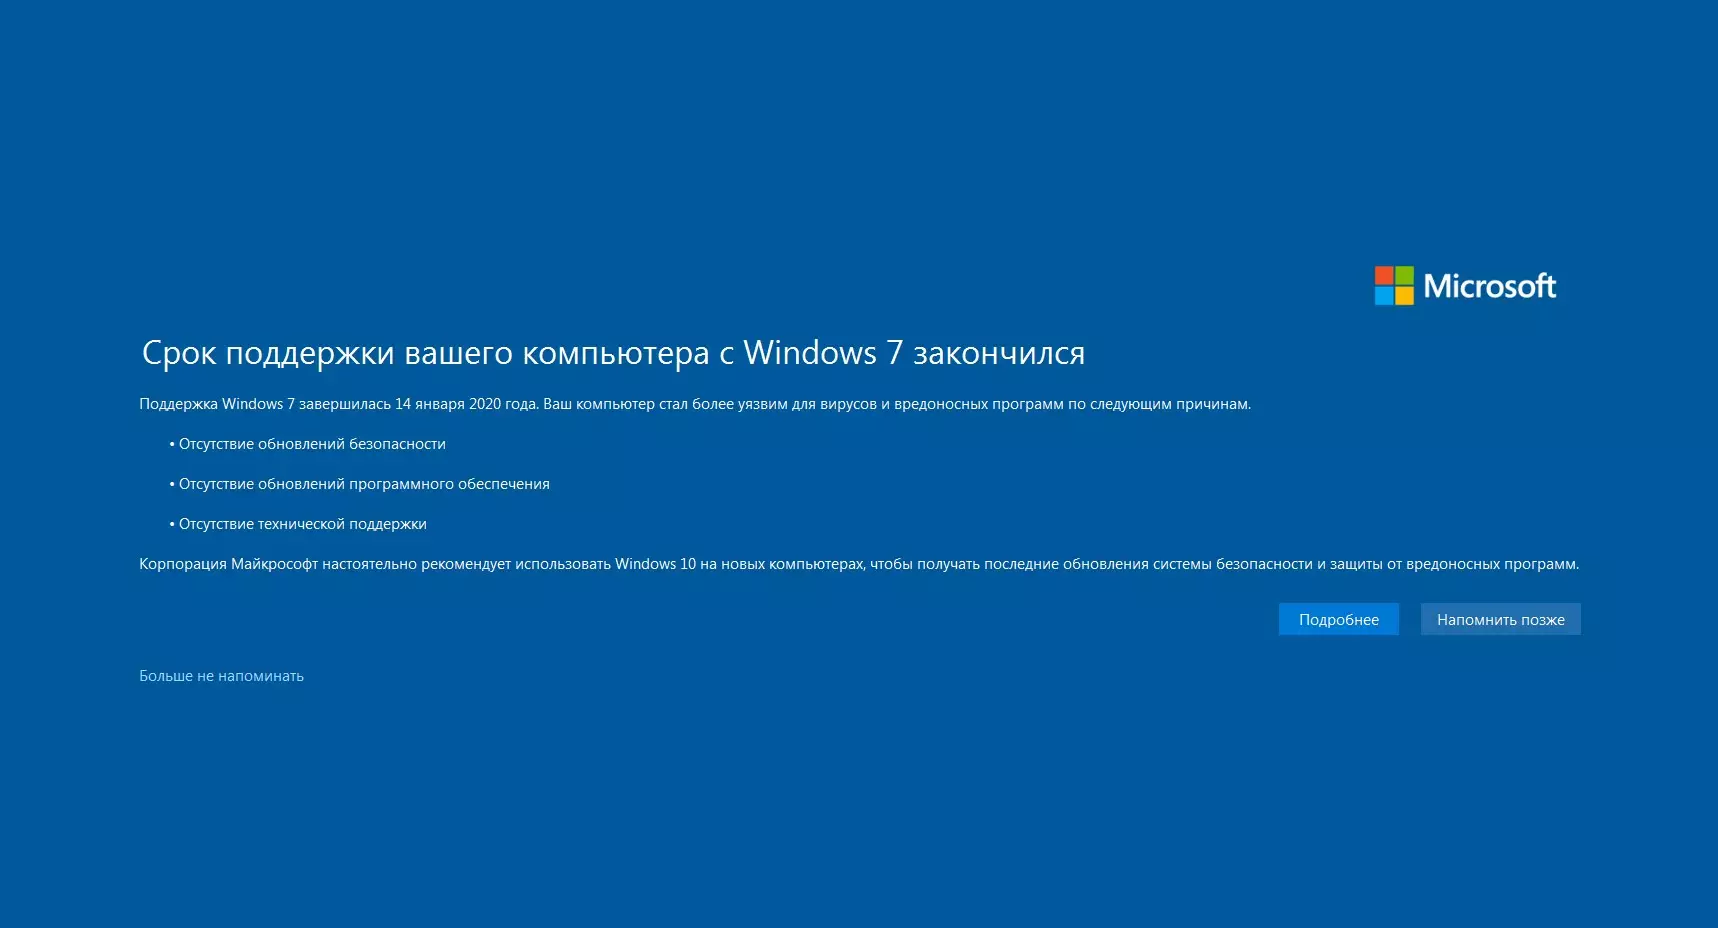 Повідомлення, які отримують користувачі Windows 7 після закінчення офіційної підтримки від Microsoft